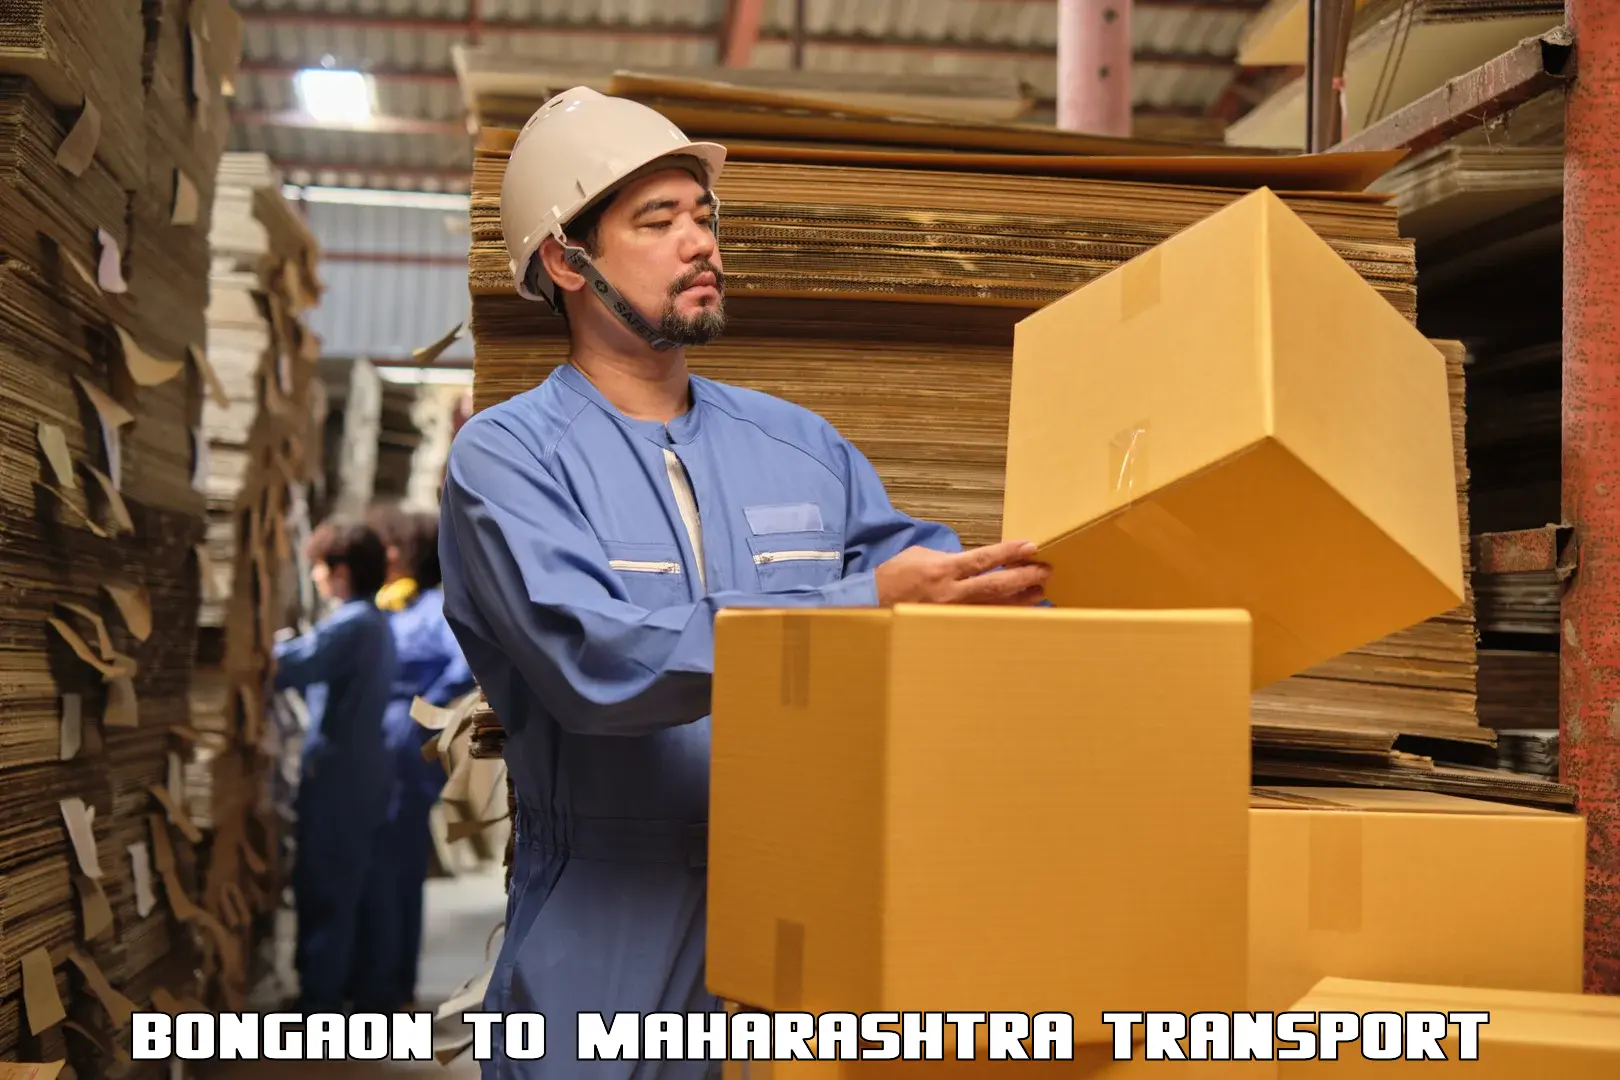 Furniture transport service Bongaon to Maharashtra